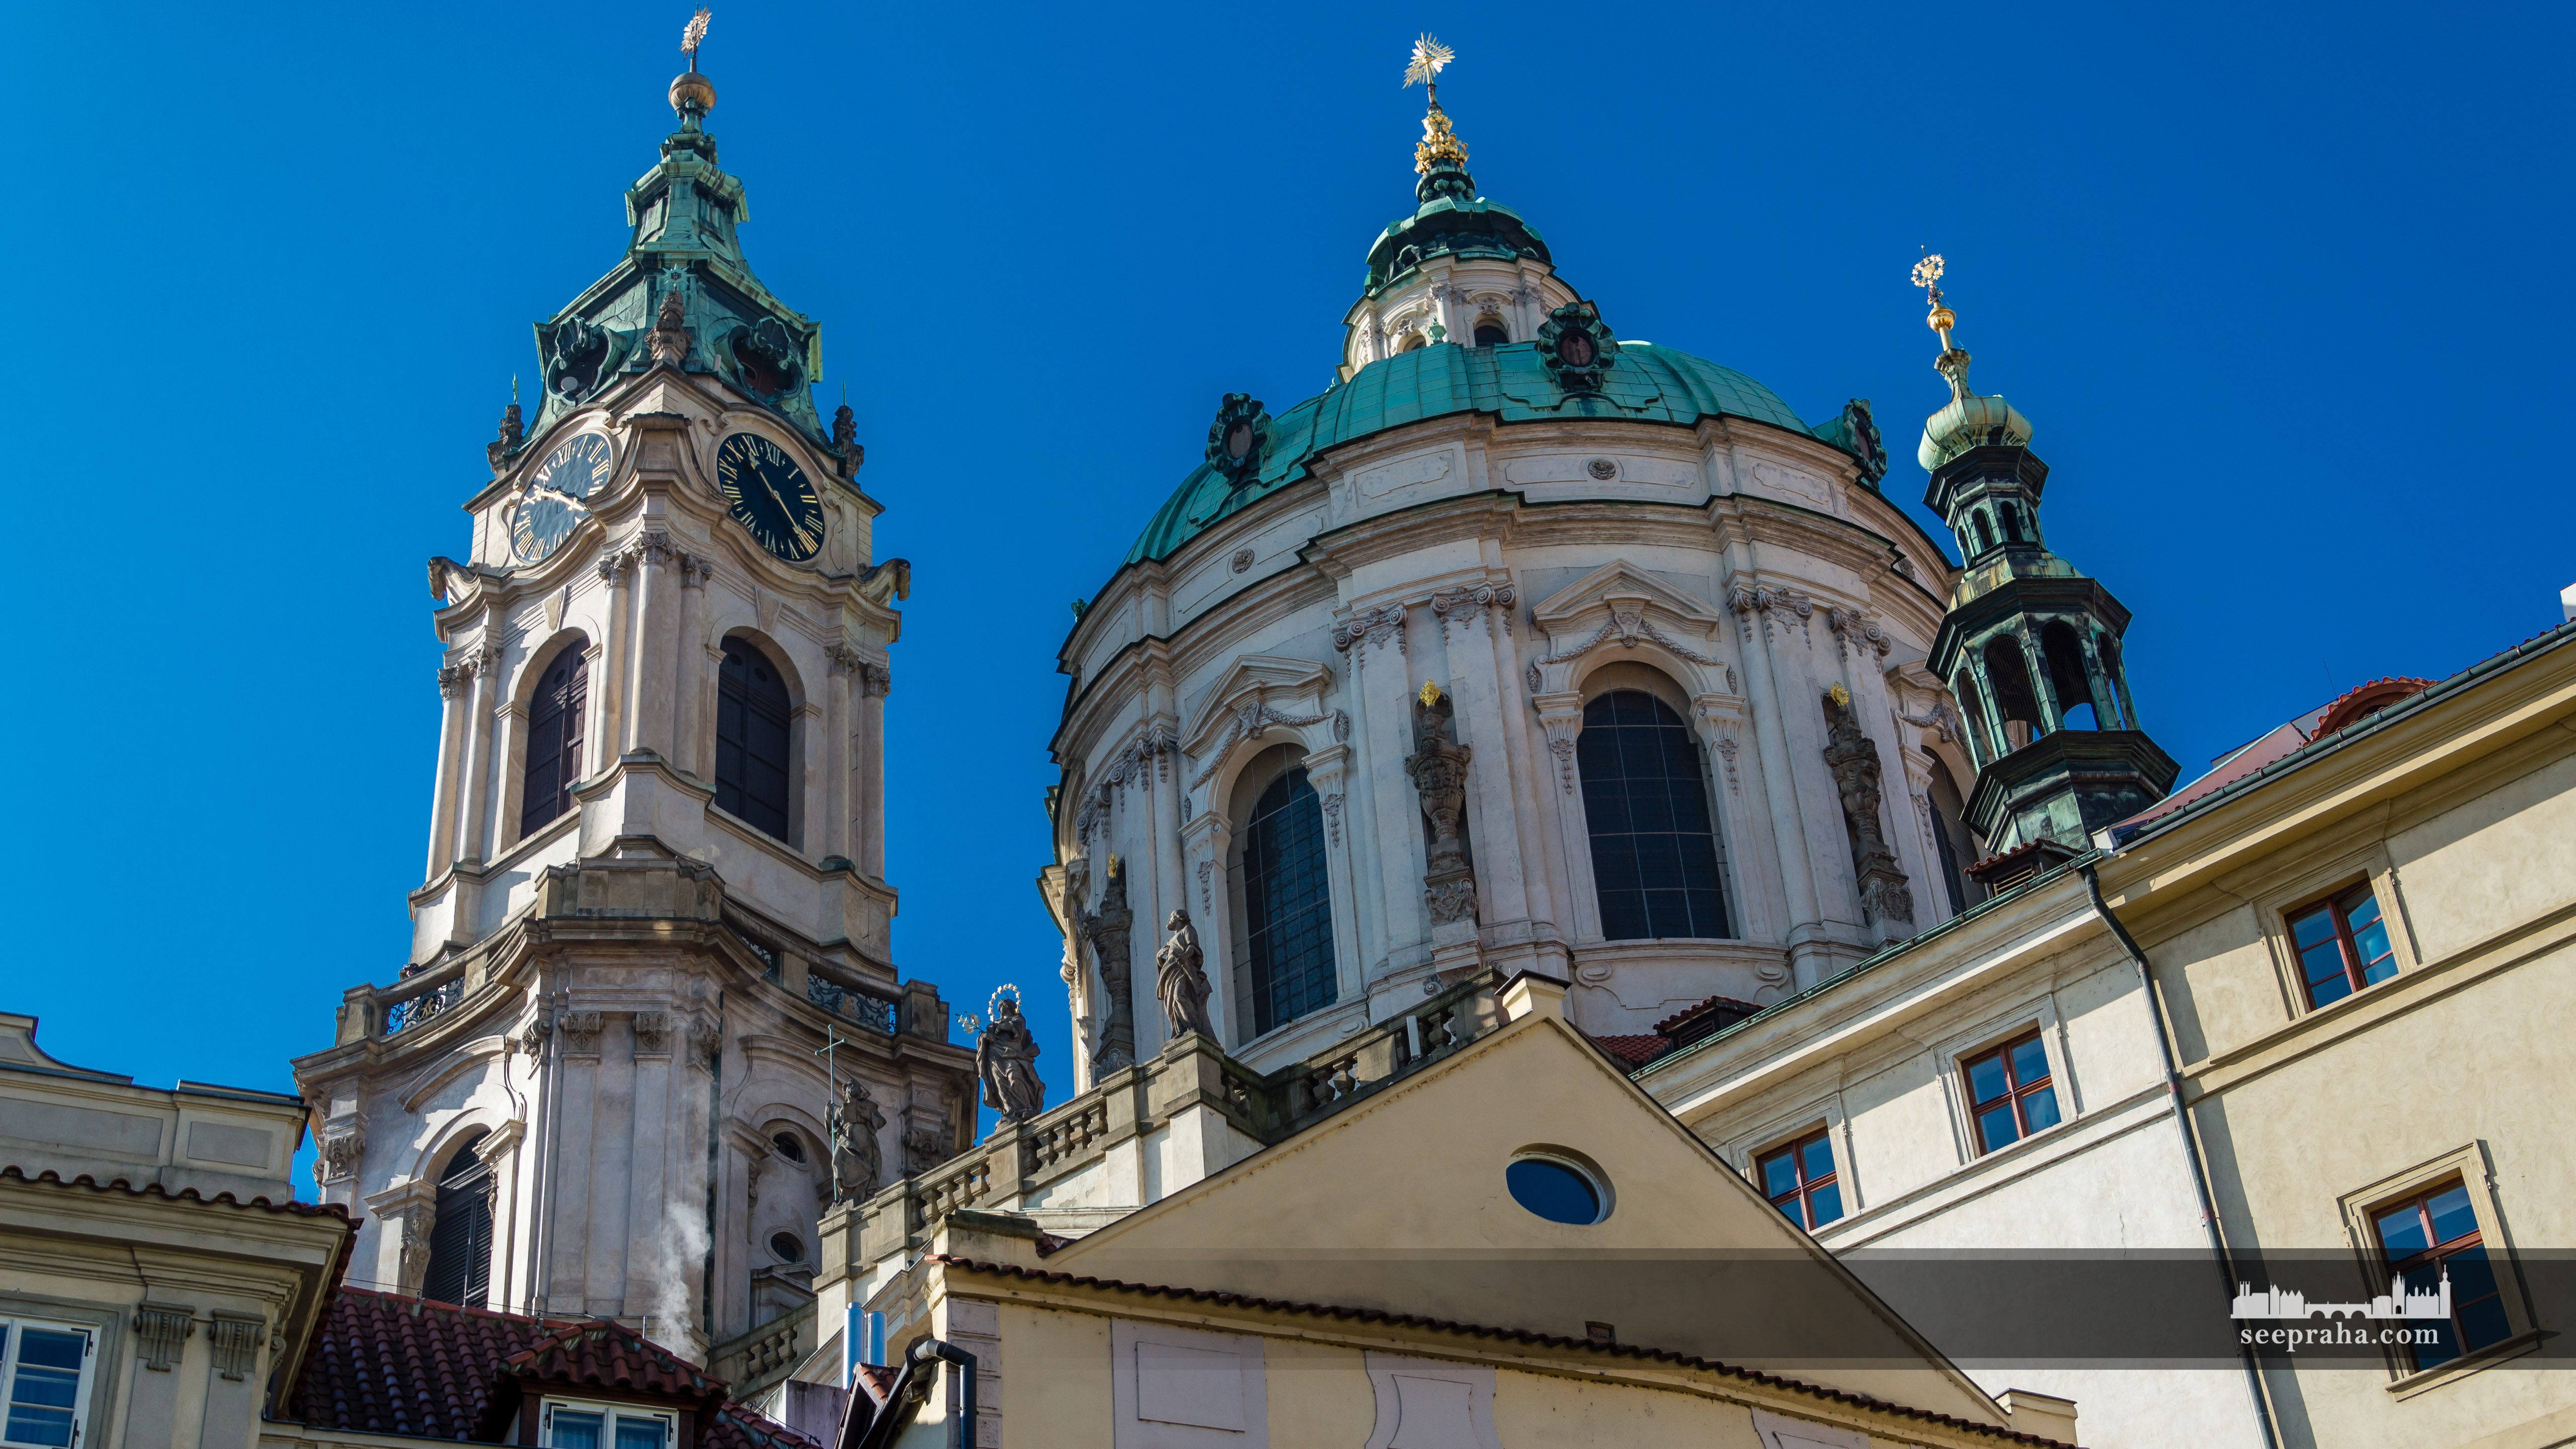 Der Glockenturm der Heiligen Nikolauskirche, Prag, Tschechien